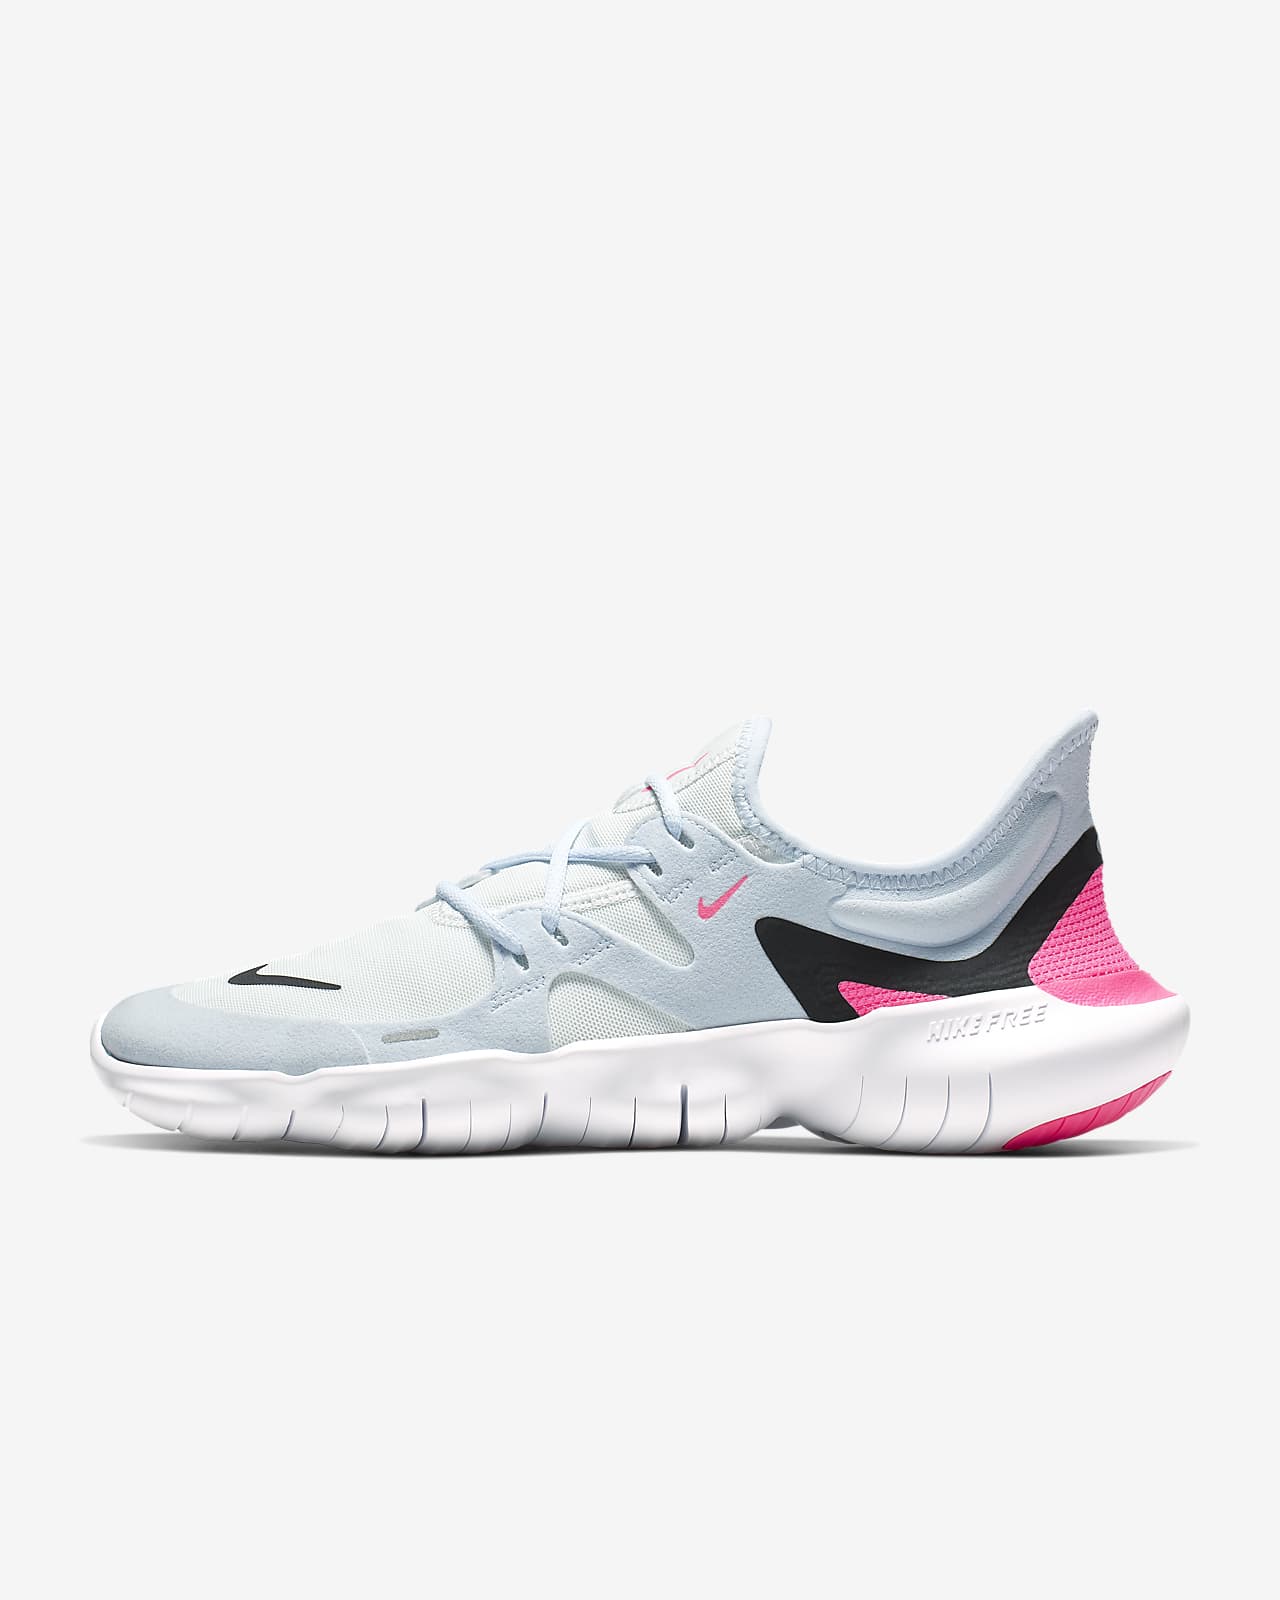 RN 5.0 Women's Running Shoe. Nike ID